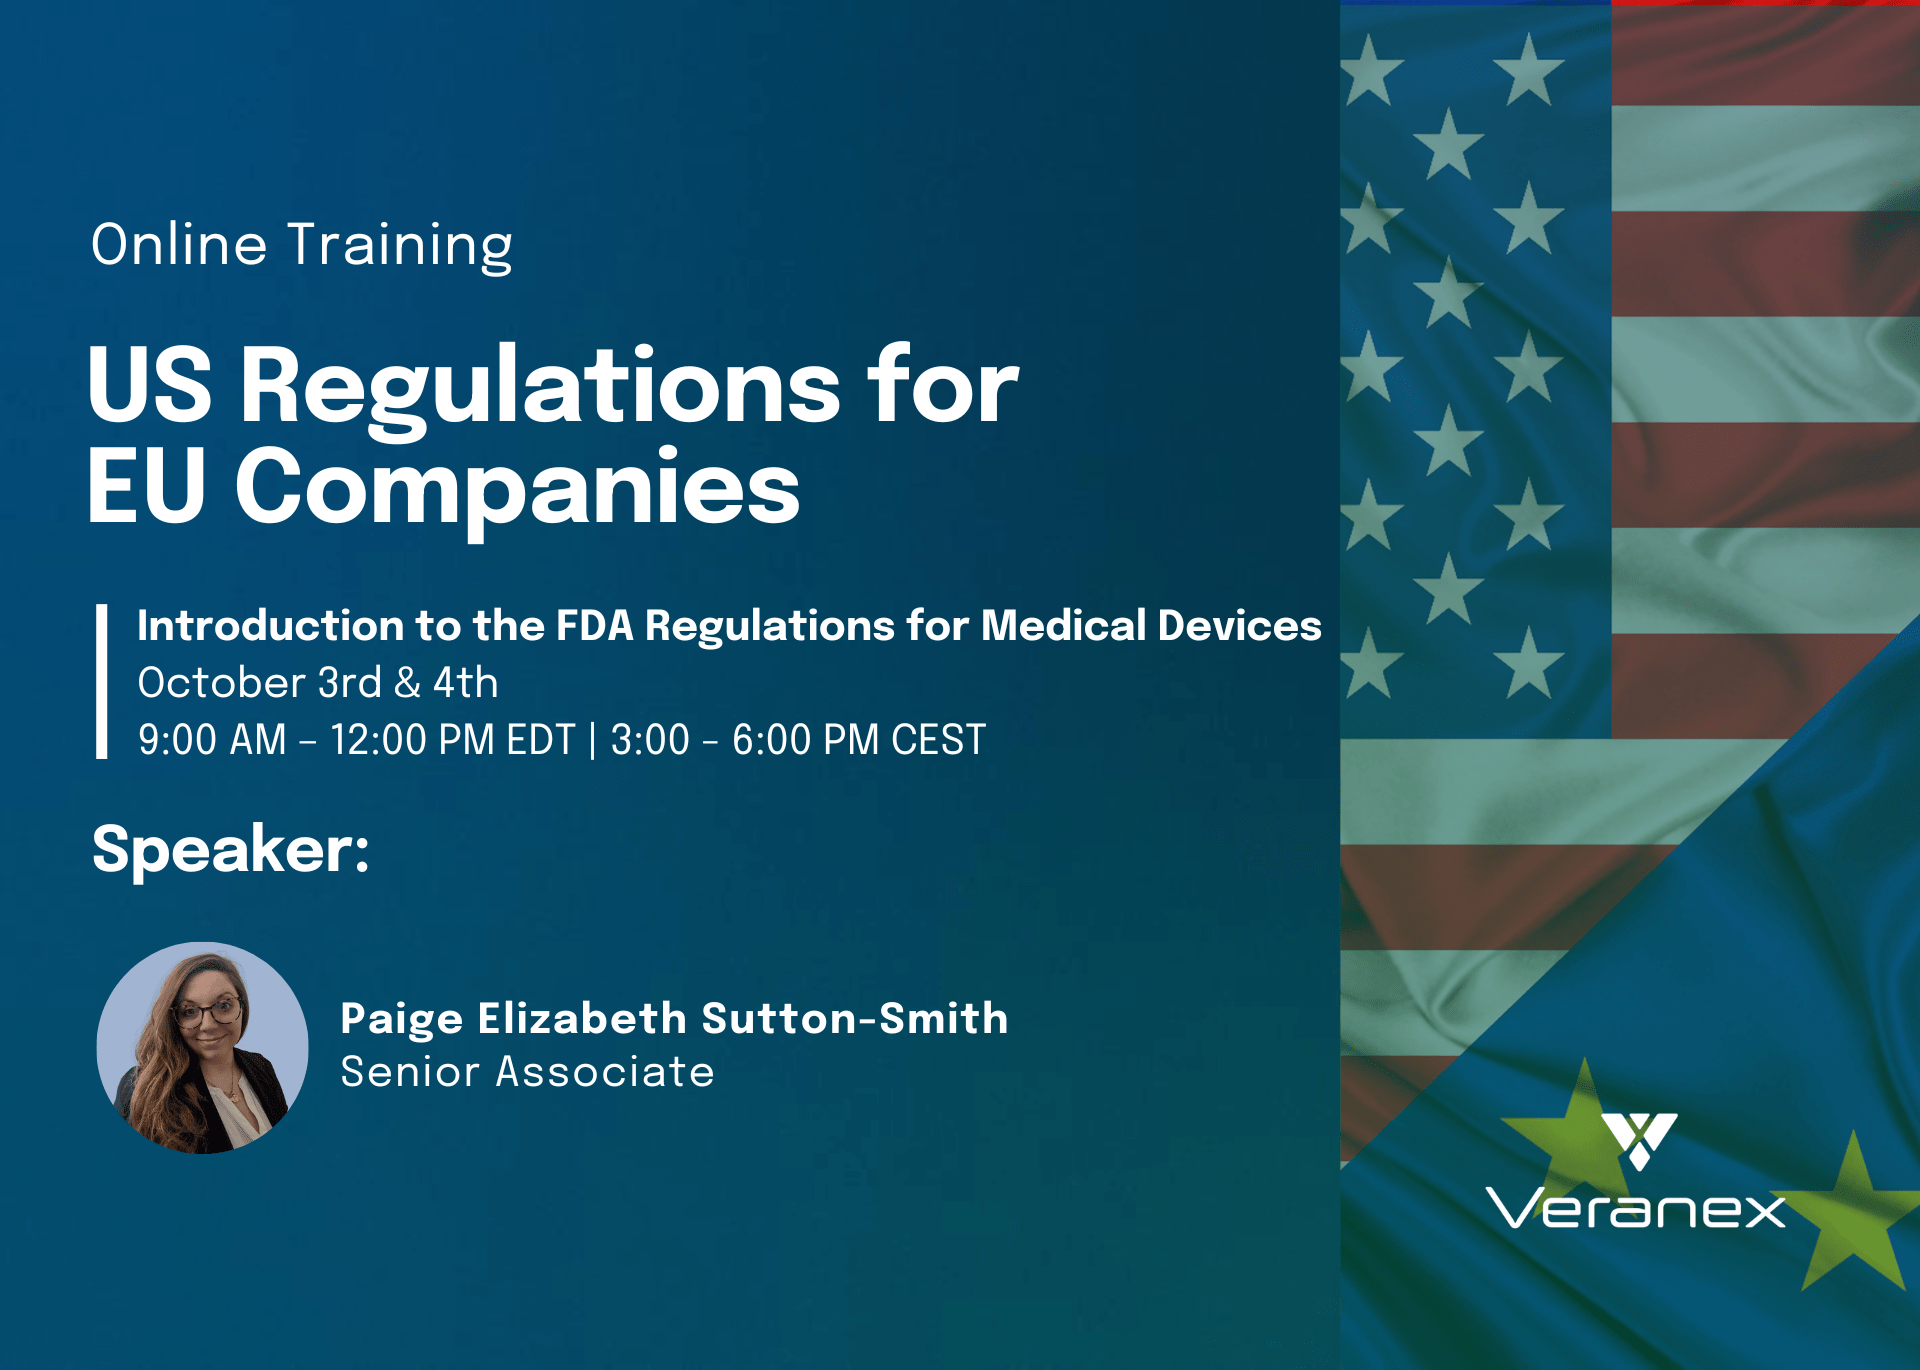 US regulations for EU companies